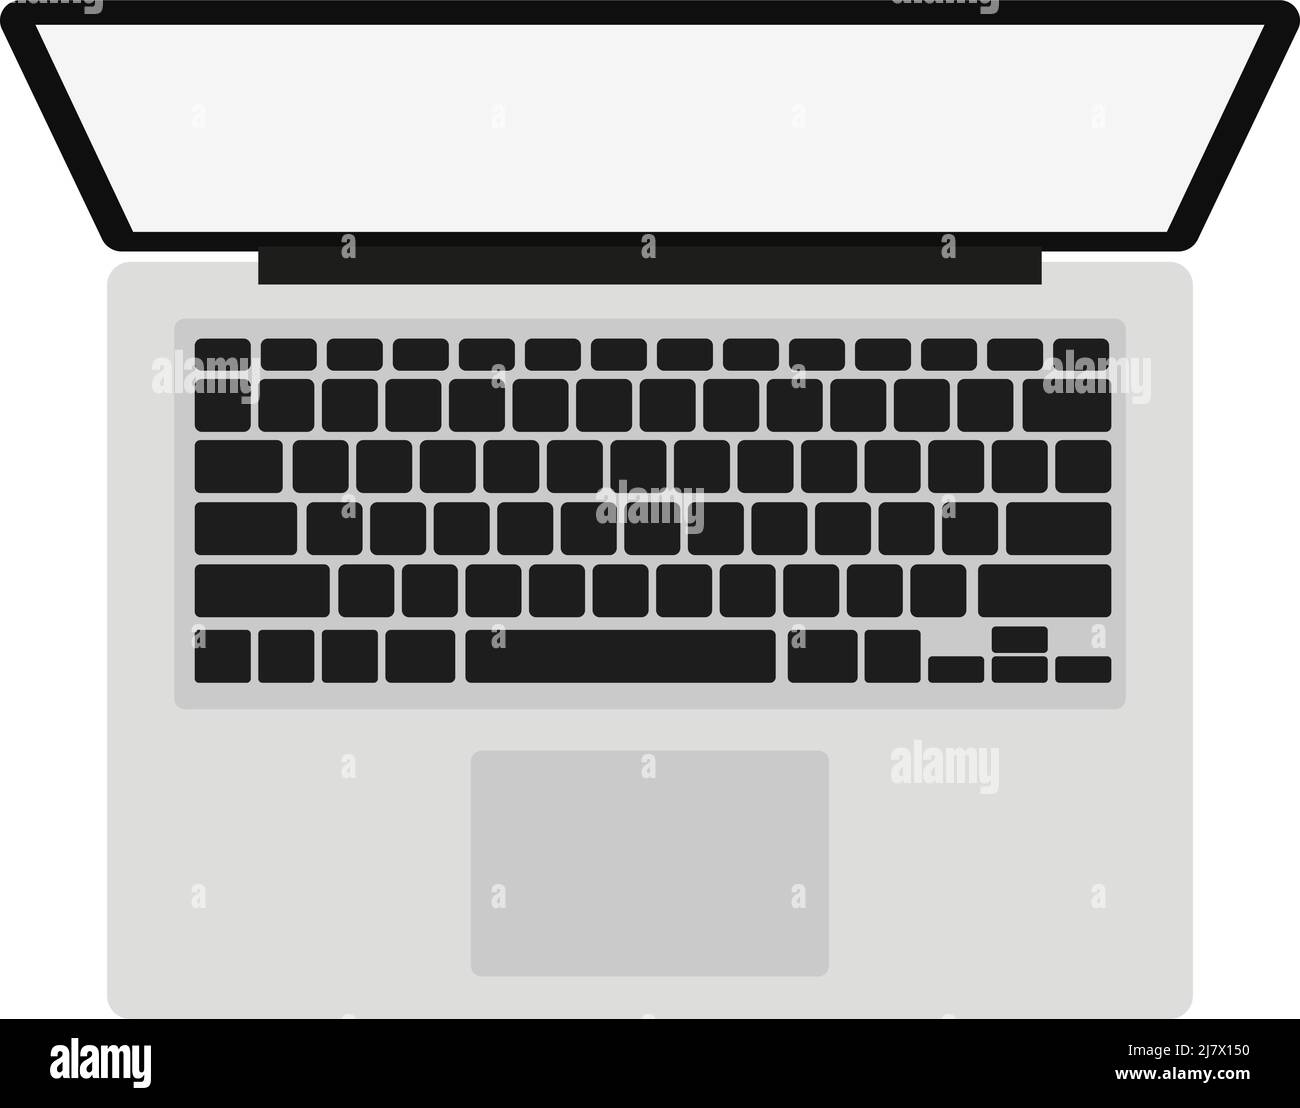 Draufsicht auf Laptop-Computer auf weißem Hintergrund, flache Vektorgrafik Stock Vektor